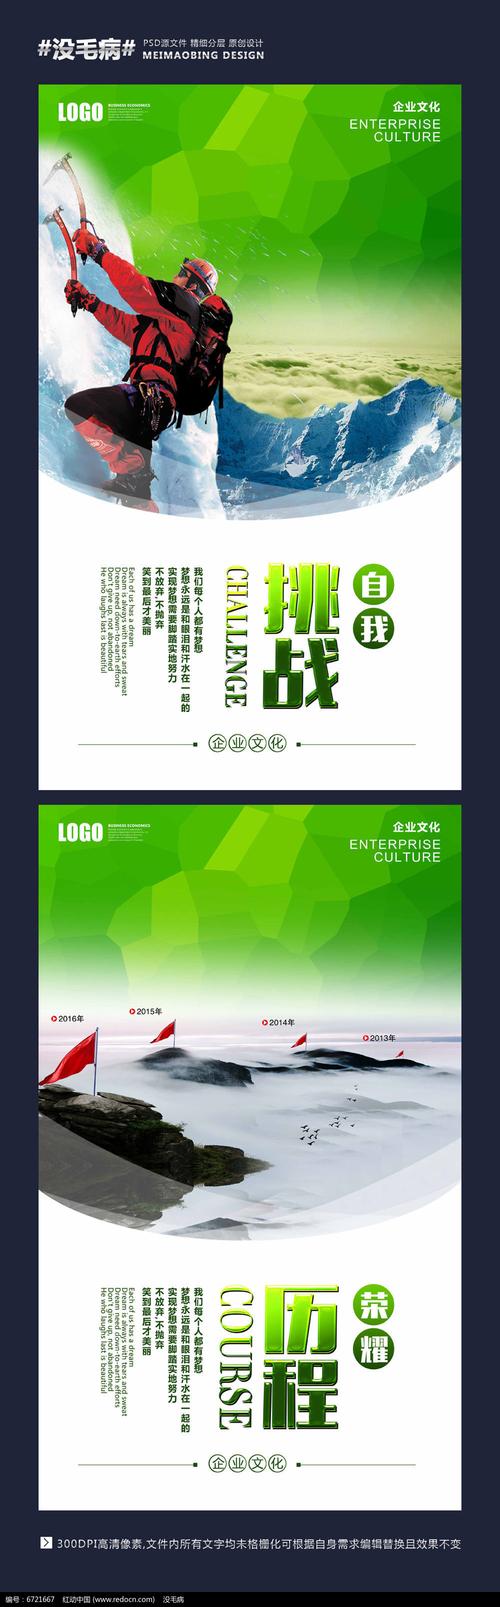 亿博体育app:西安卖扣子的地方(西安卖衣服地方)